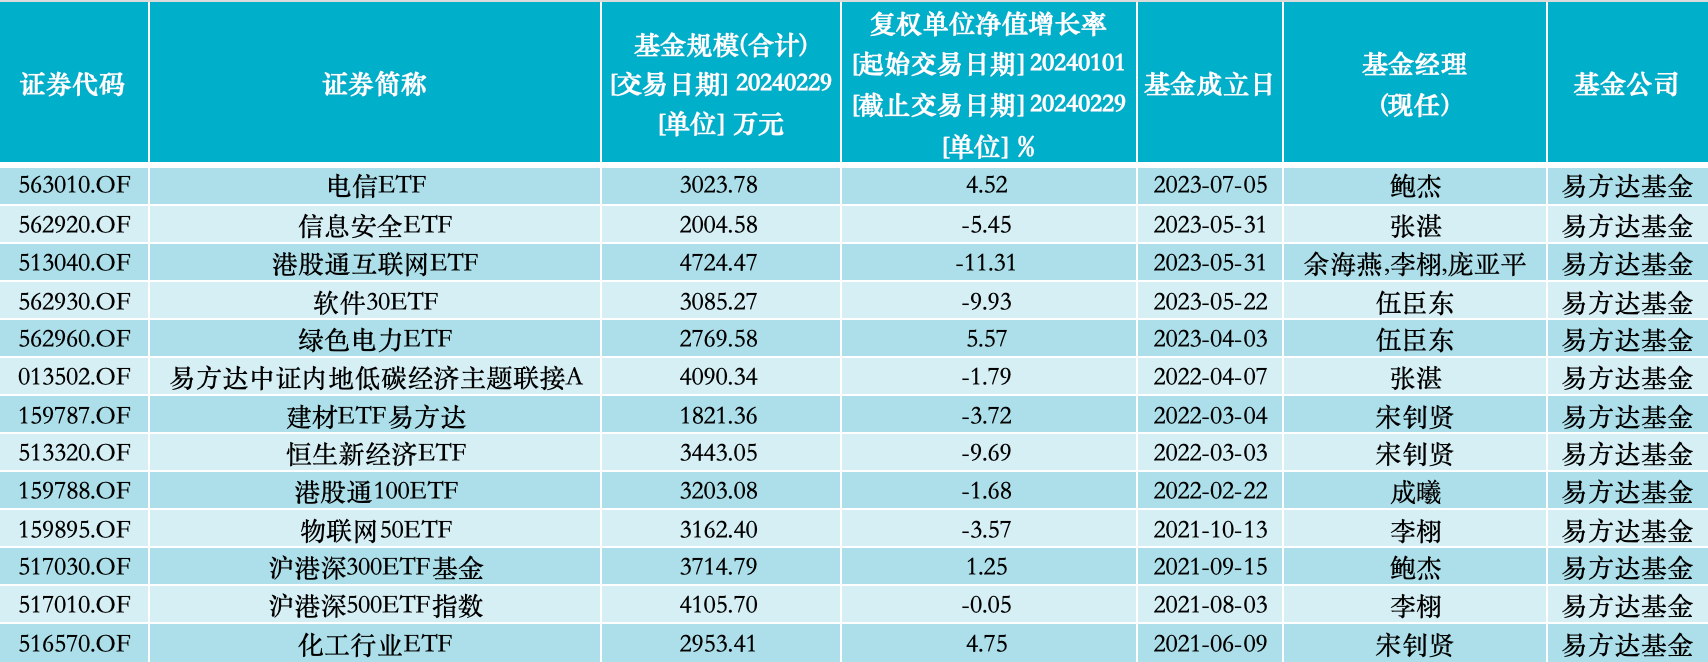 目前易方达旗下13只资产规模低于5000万元产品的情况一览；来源：澎湃新闻记者据Wind数据统计